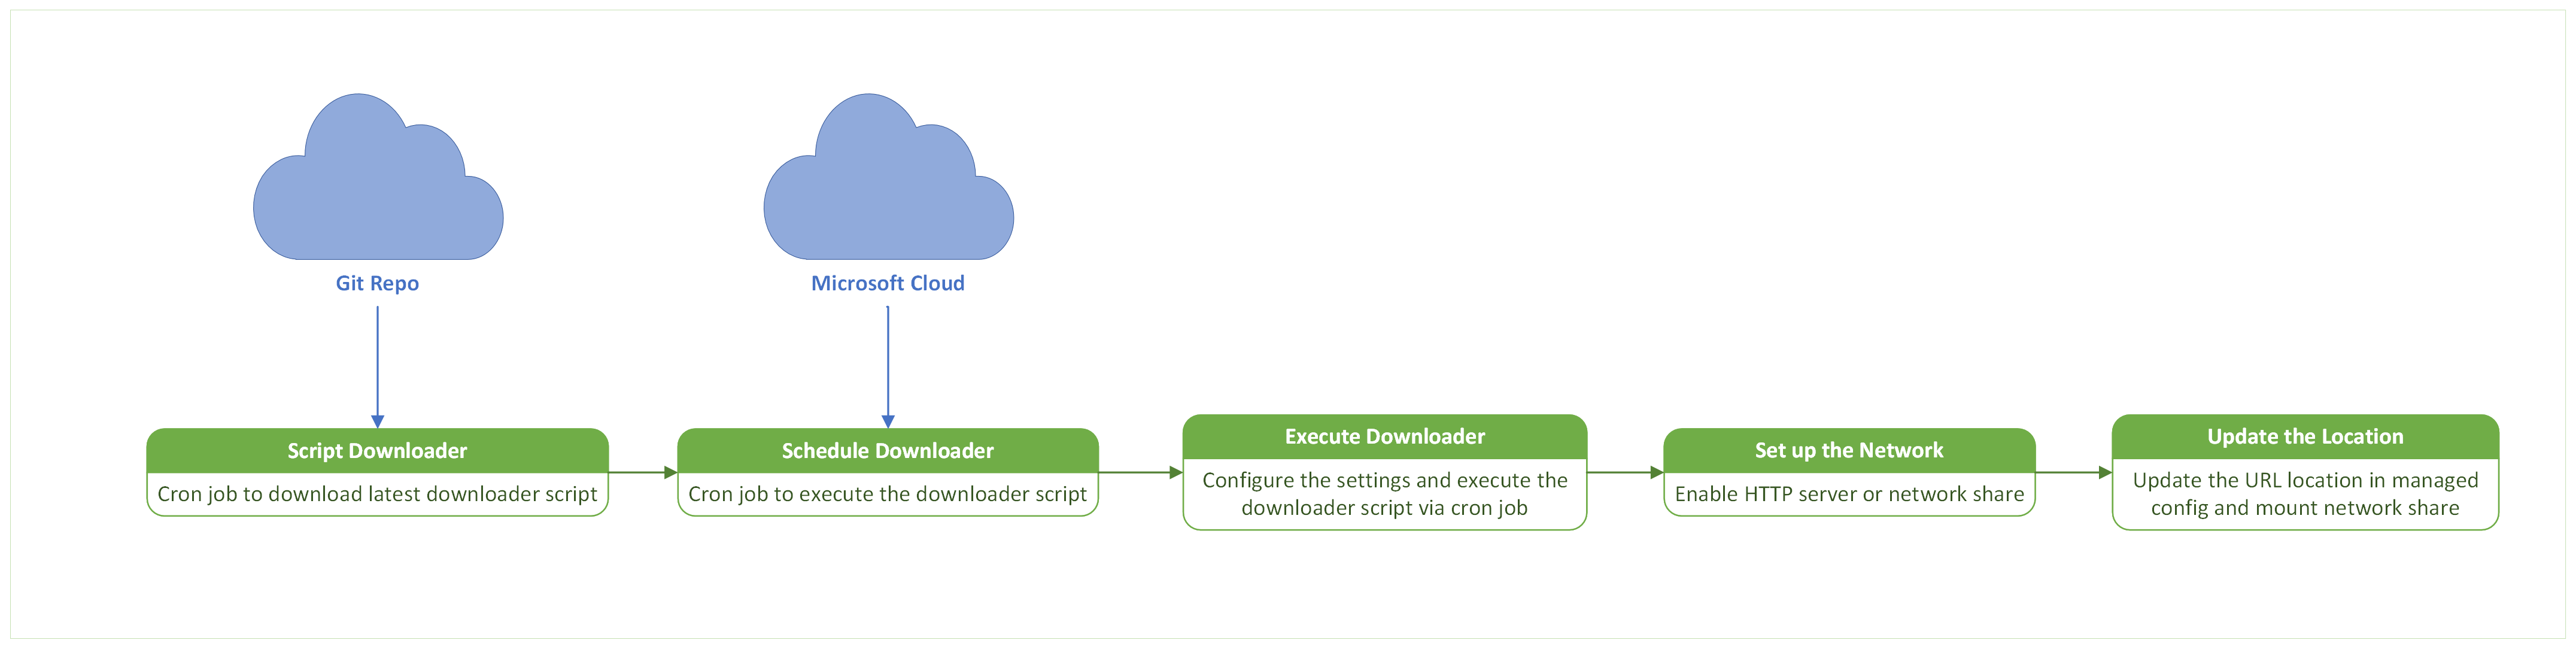 Diagramma del flusso di processo nel server mirror per il download degli aggiornamenti di Security Intelligence